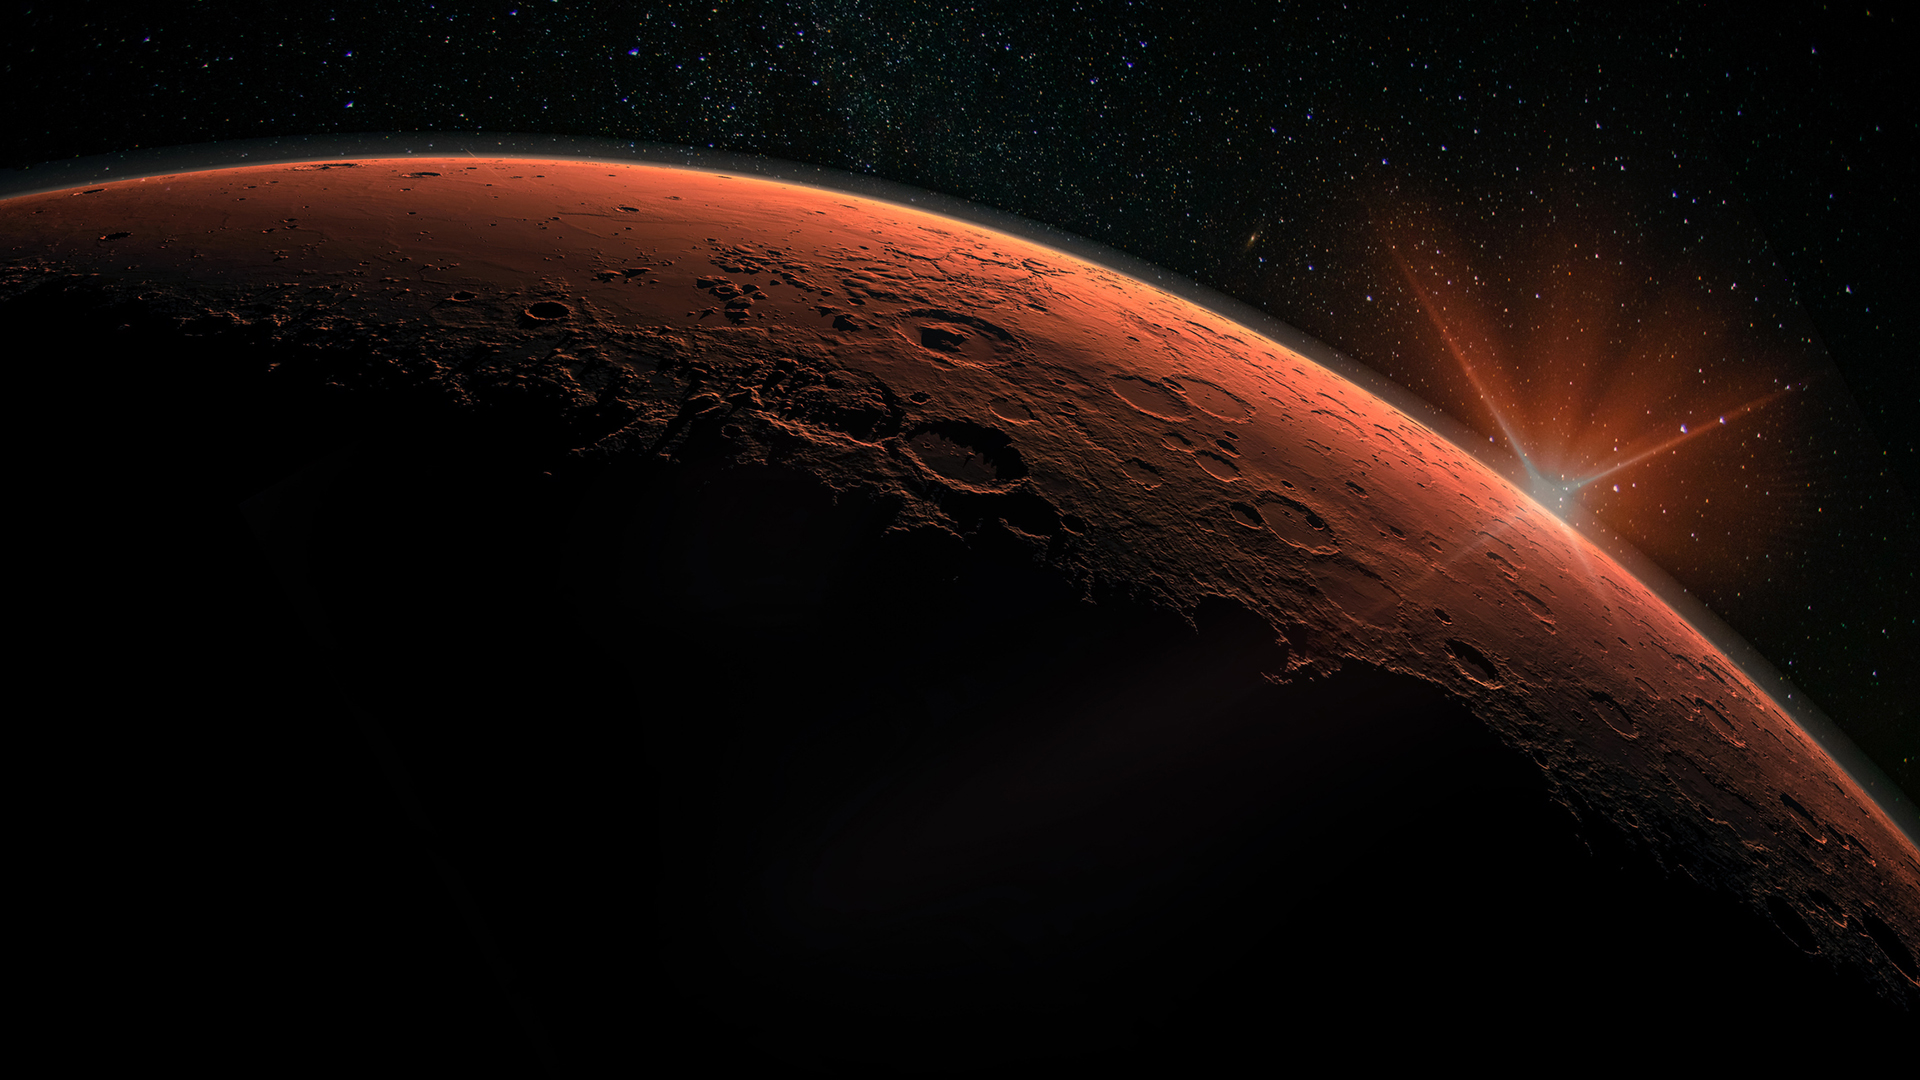 Descubren nuevos cráteres de impacto de meteoritos en Marte